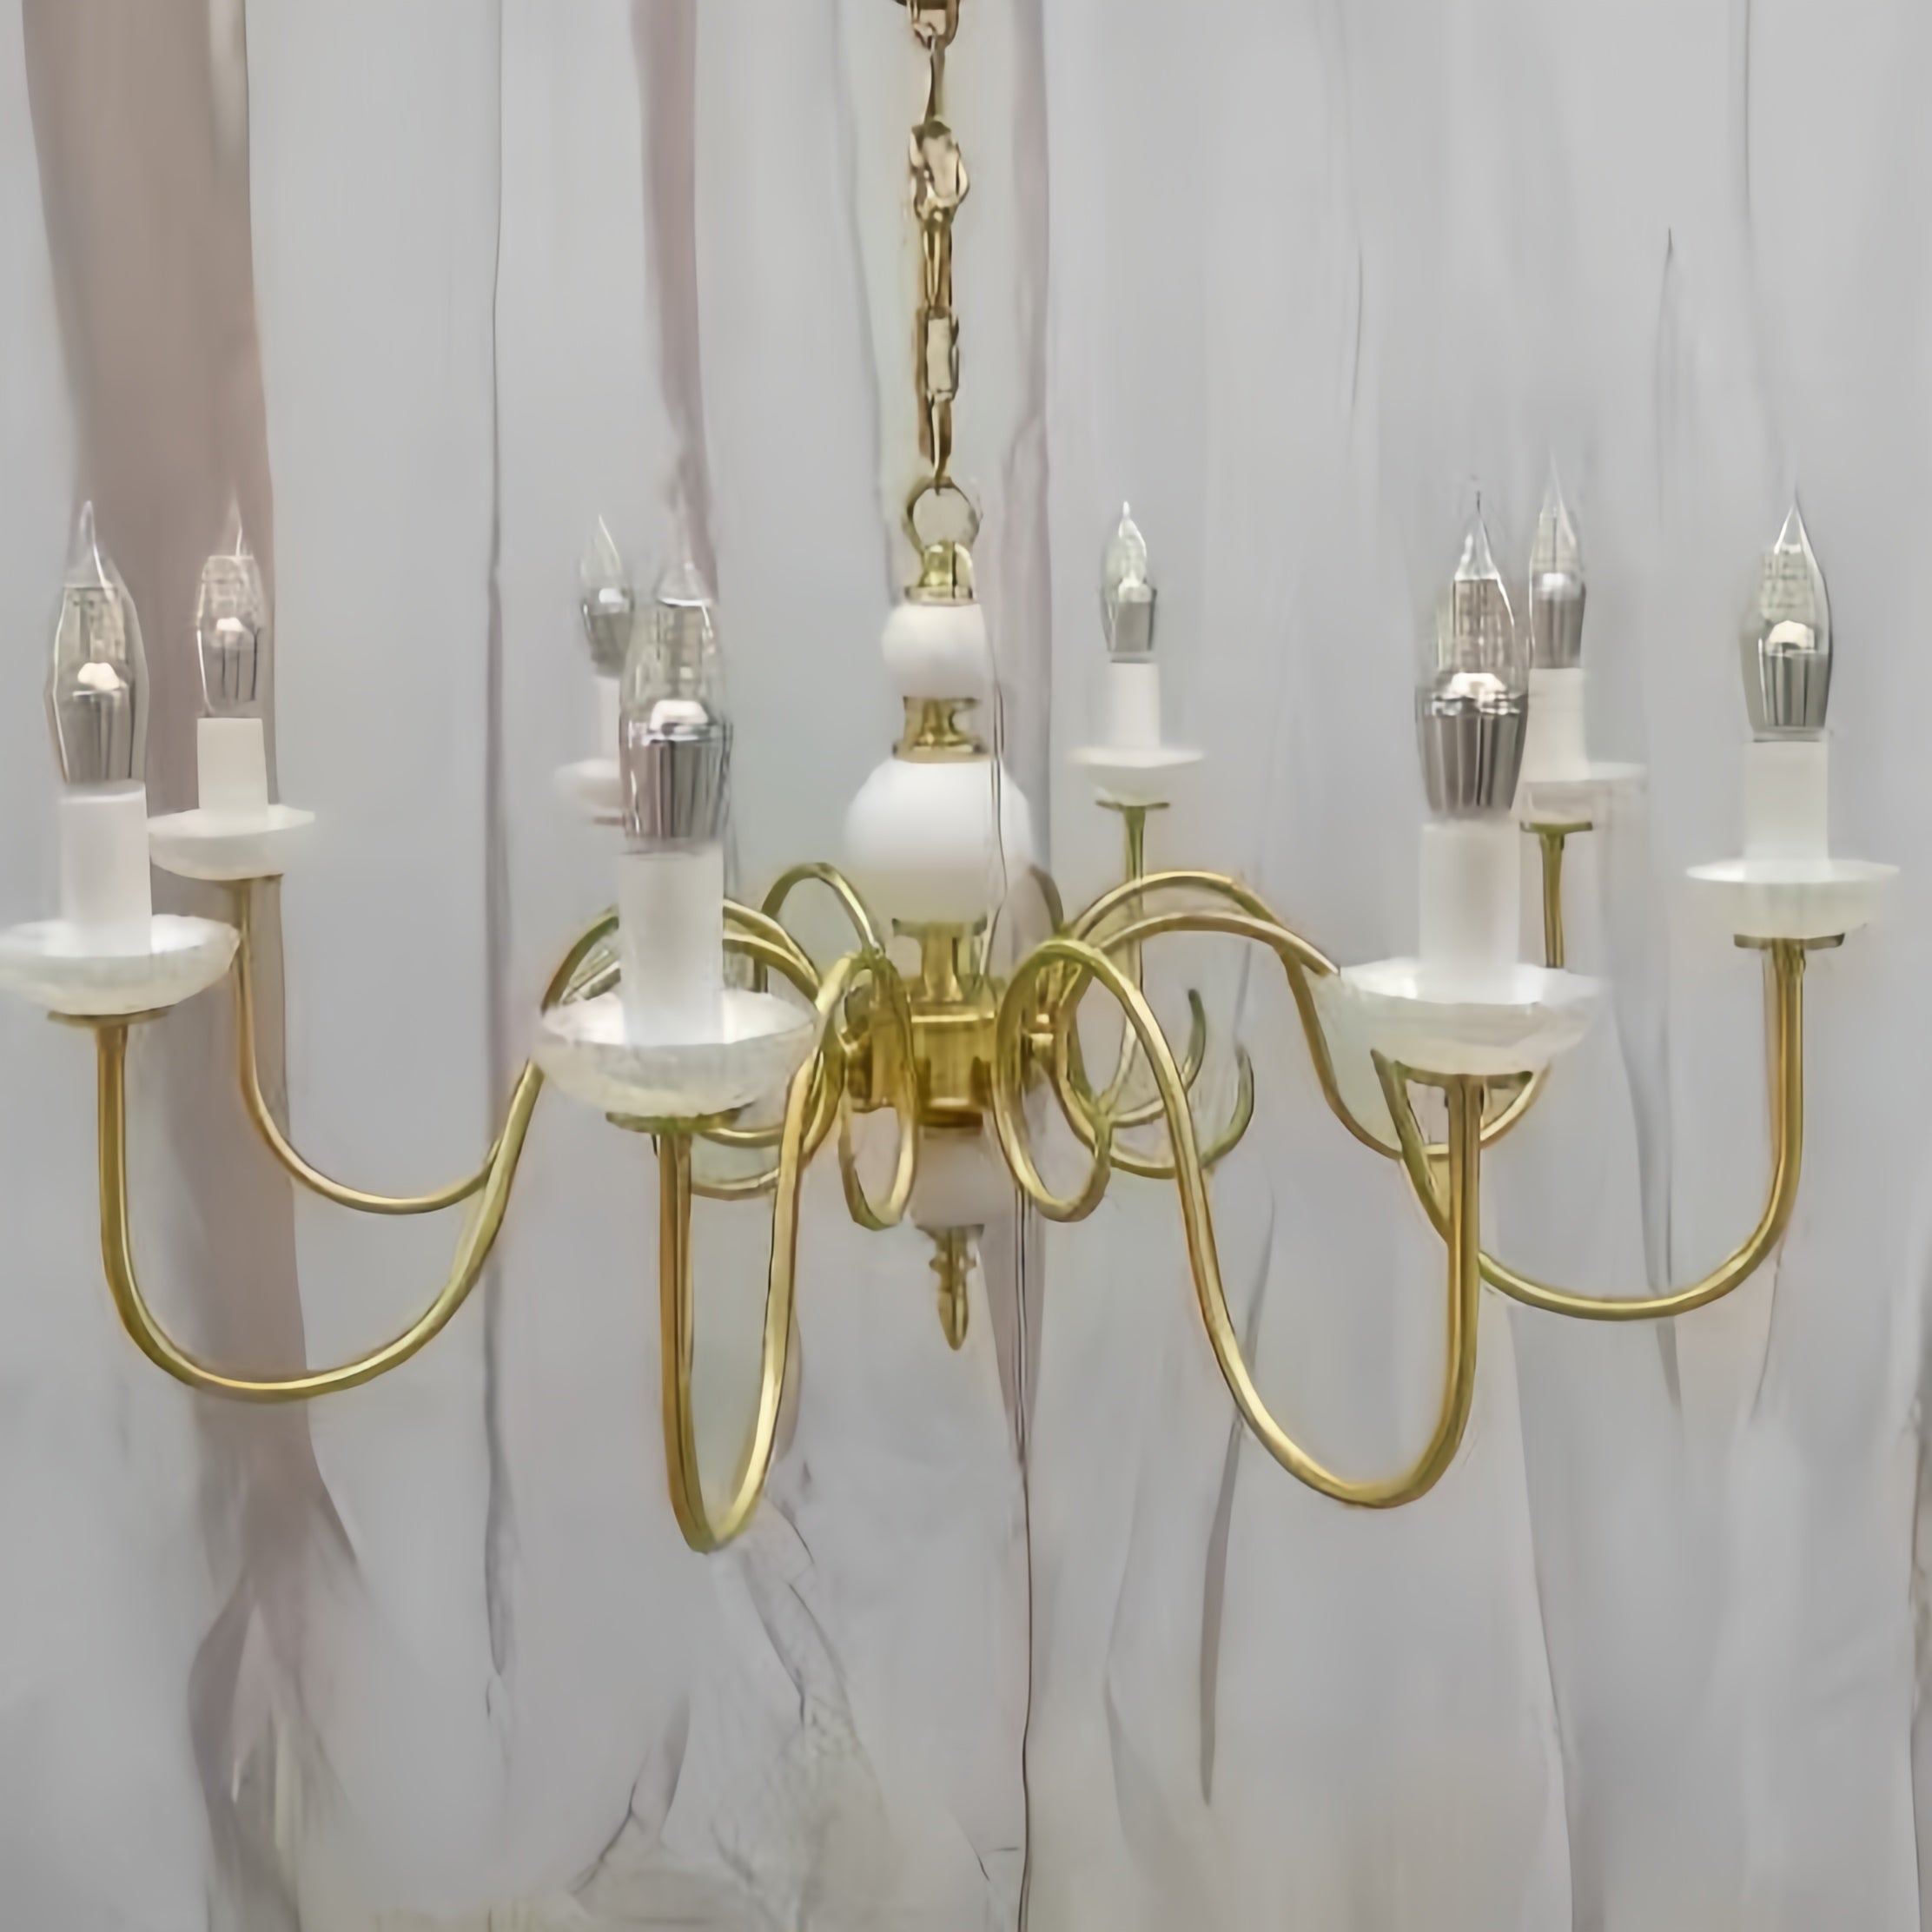 Silva Vintage LED Kerze Kronleuchter Keramik Schlafzimmer